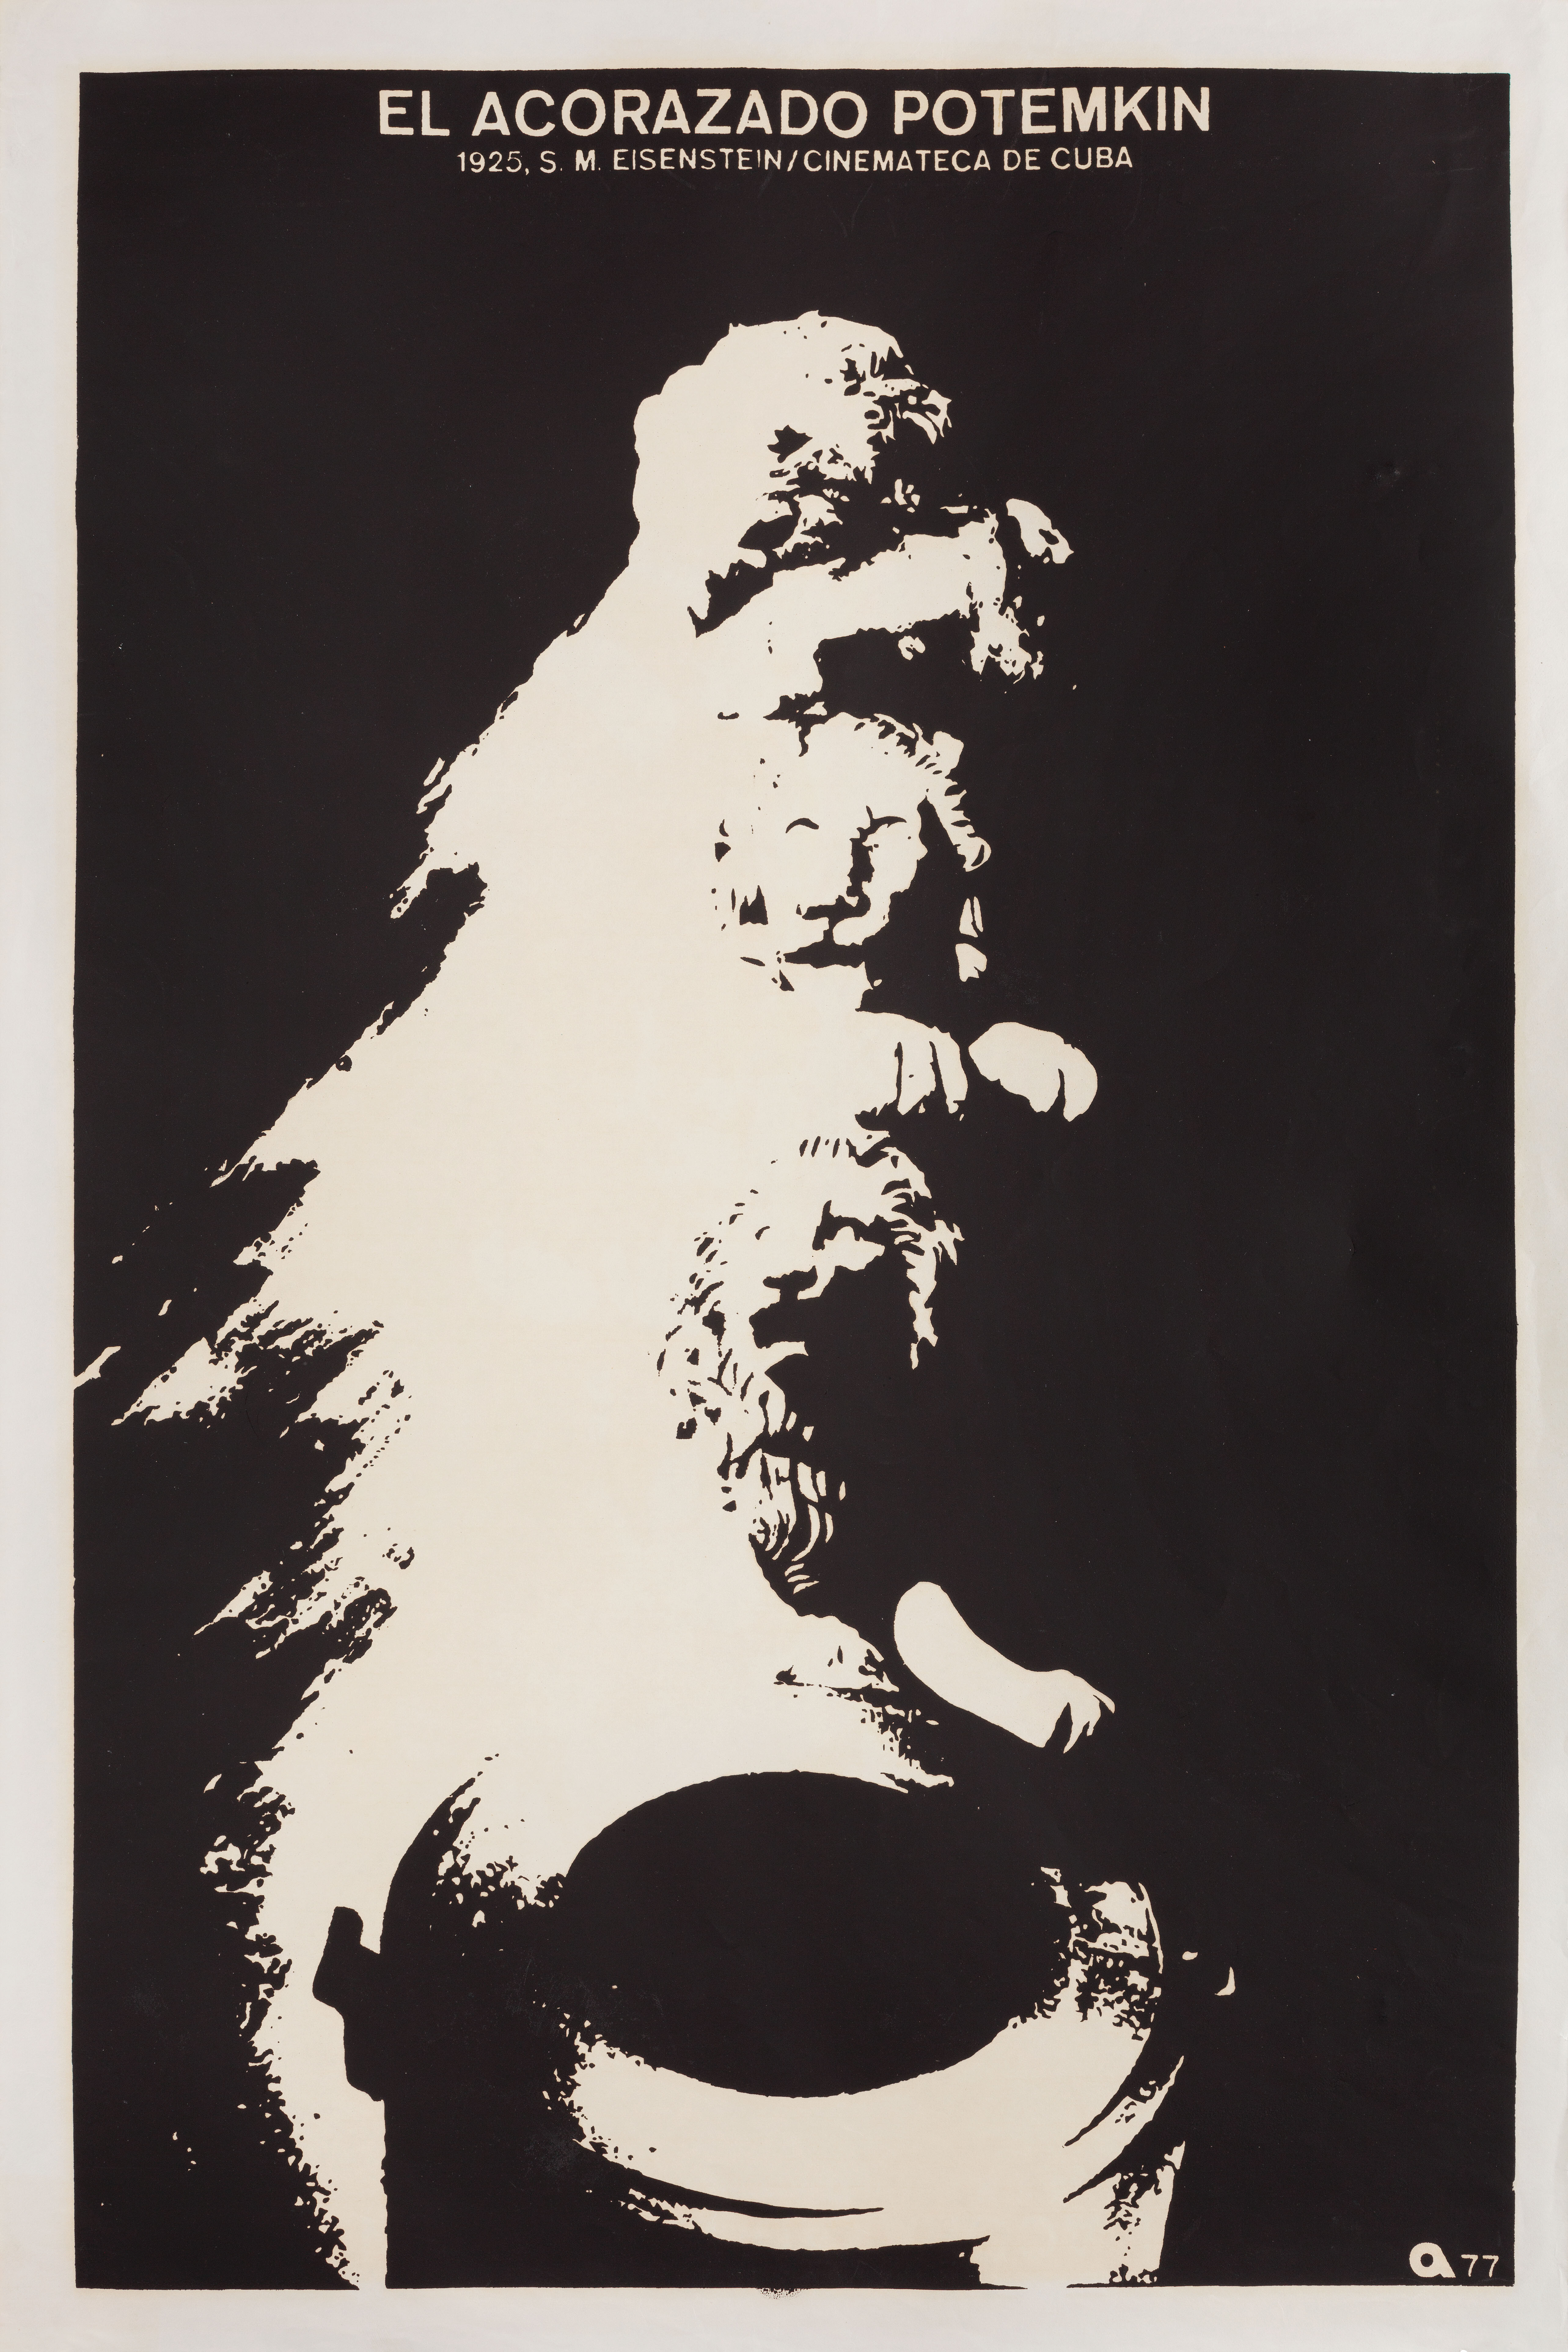 Броненосец Потемкин (Battleship Potemkin, 1925), режиссёр Сергей Михайлович Эйзенштейн, кубинский плакат к фильму, 1977 год